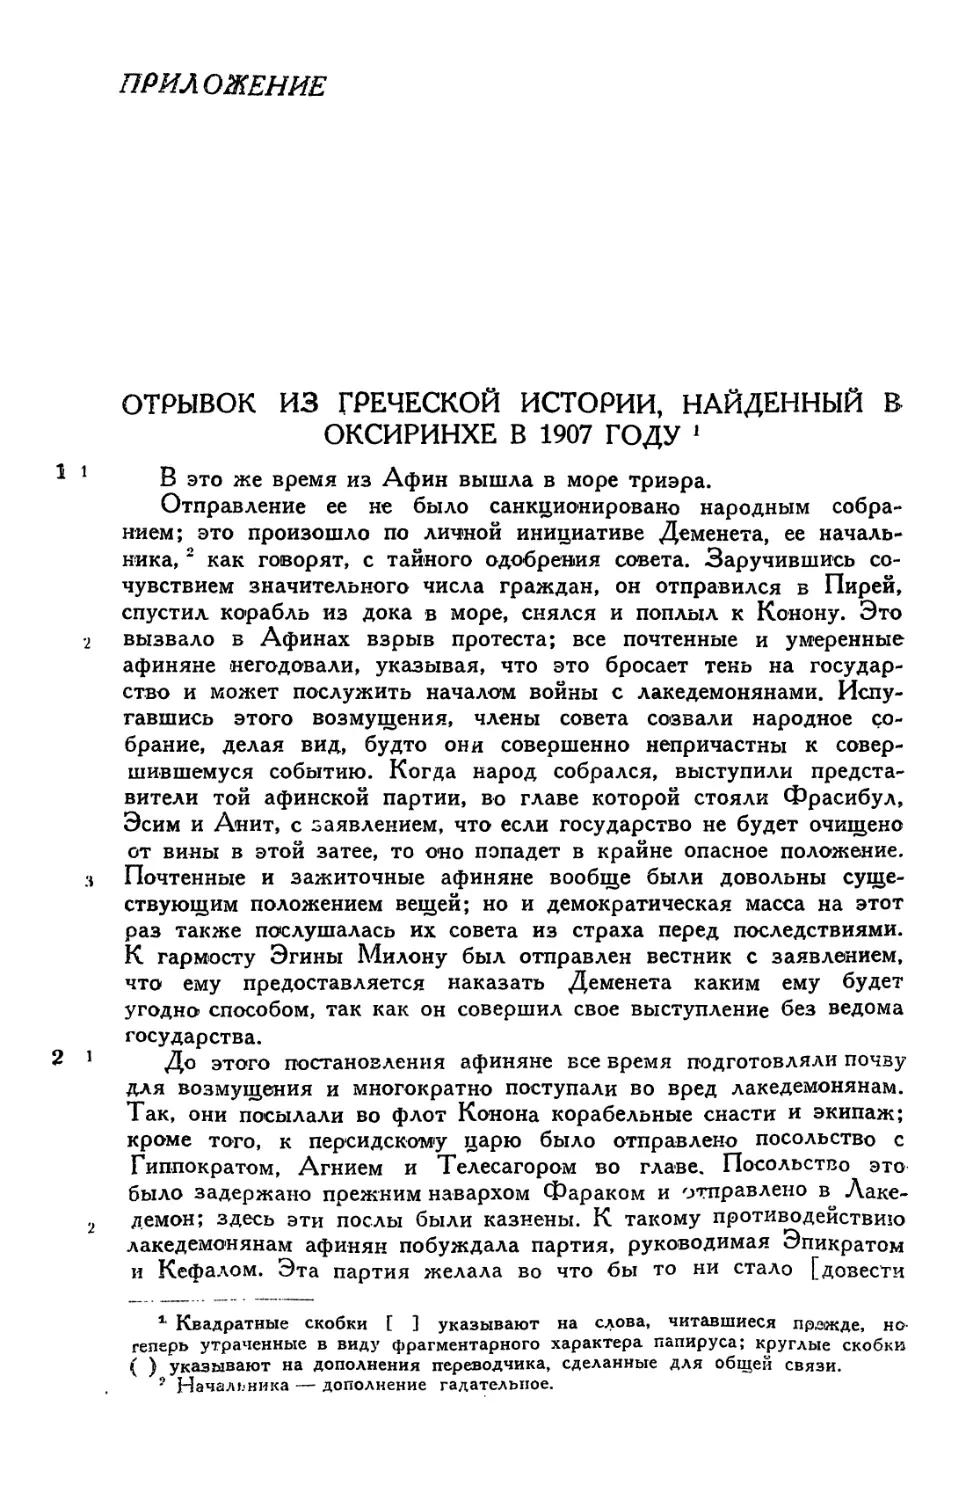 Приложение. Отрывок из «Греческой истории», найденный в Оксиринхе в 1907 г